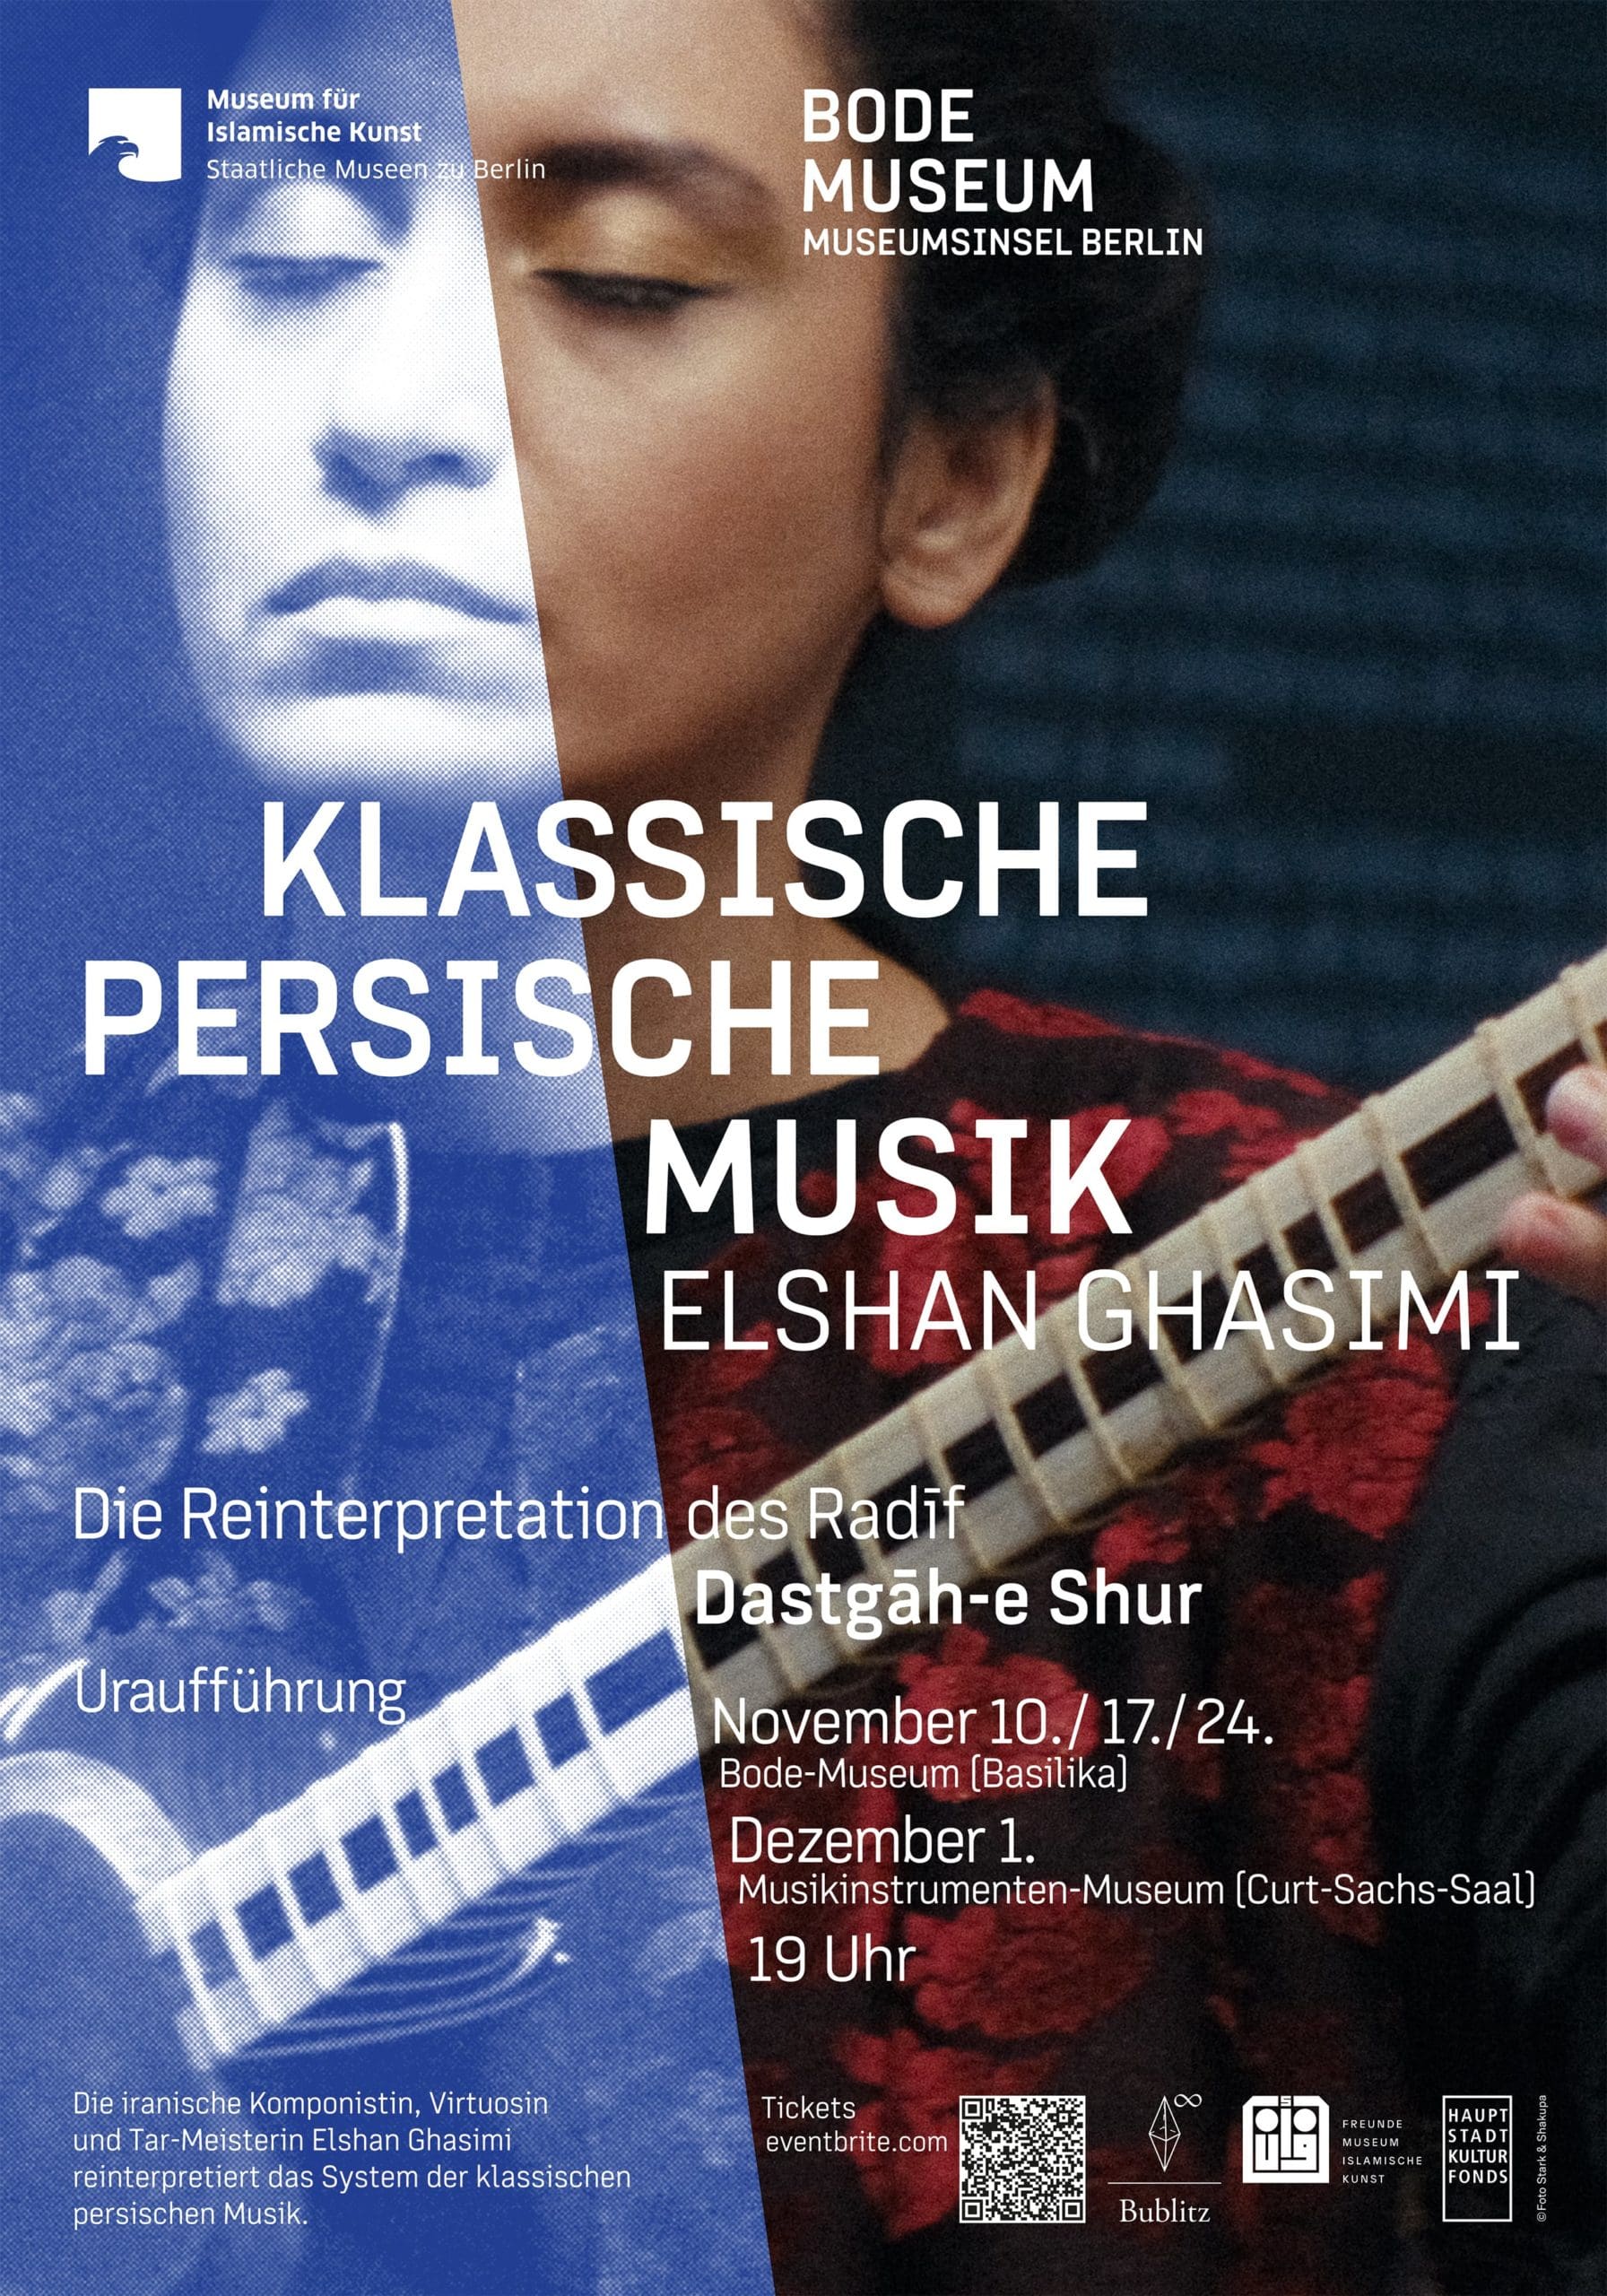 Elshan Ghasimi. Eine Frau revolutioniert die klassische persische Musik